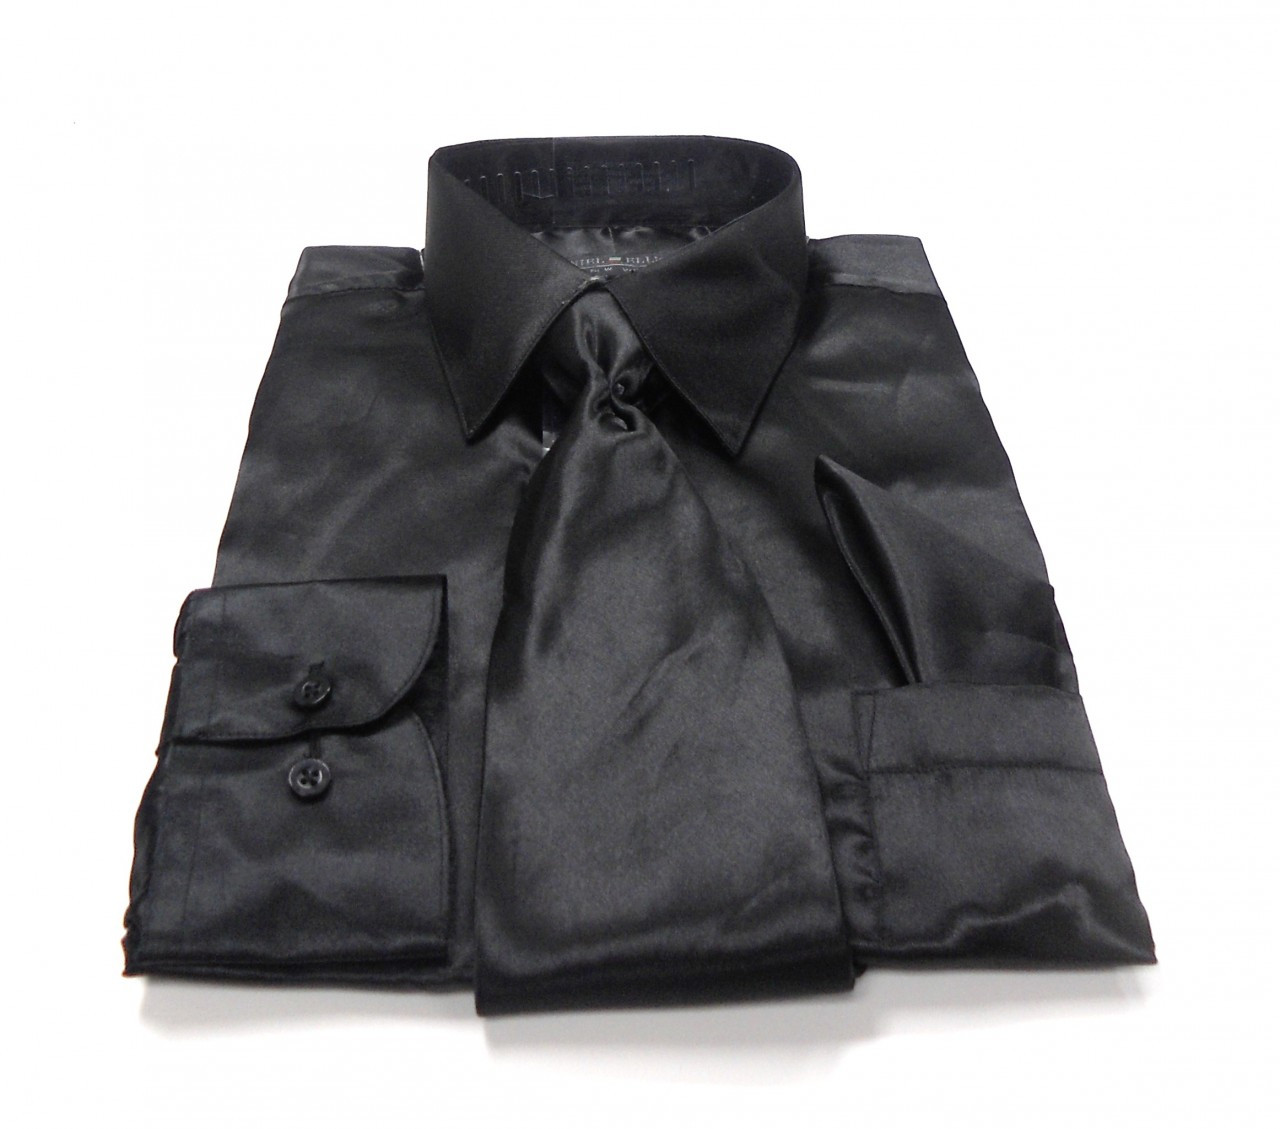 black satin dress shirt